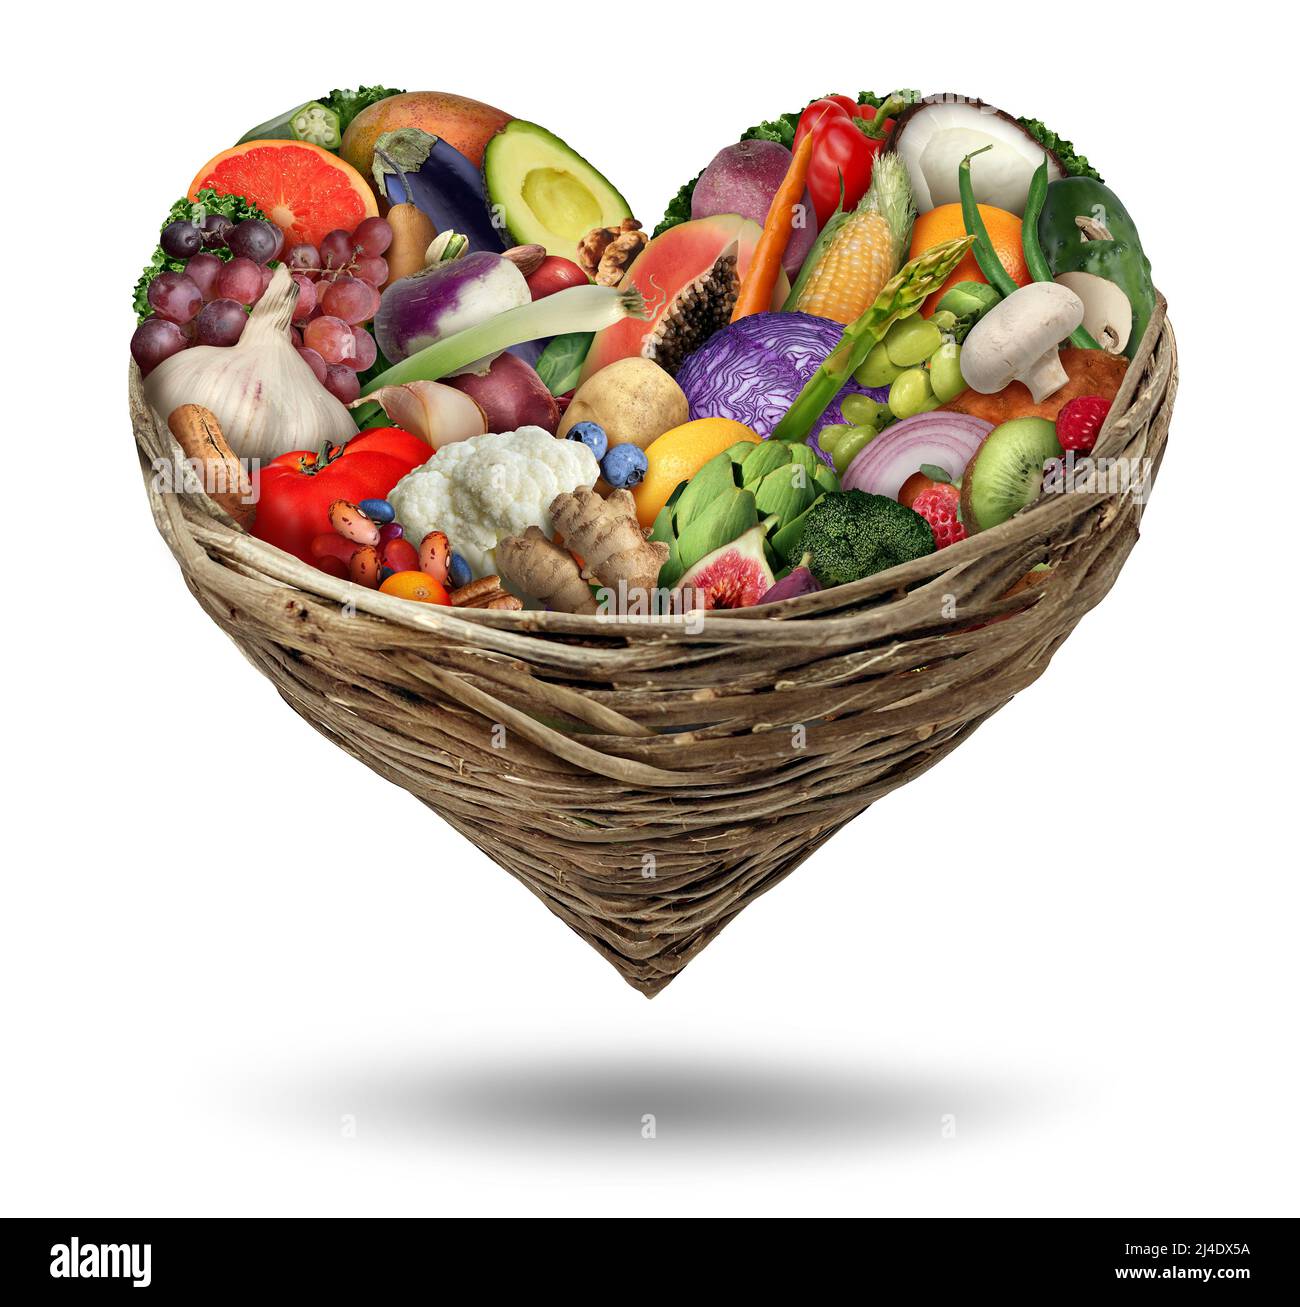 Obst und Gemüse Liebe und Herz Gesundheit Symbol in einem Füllhorn Korb als gesundes Essen und frische reife Früchte und Nüsse mit Bohnen als Diät. Stockfoto